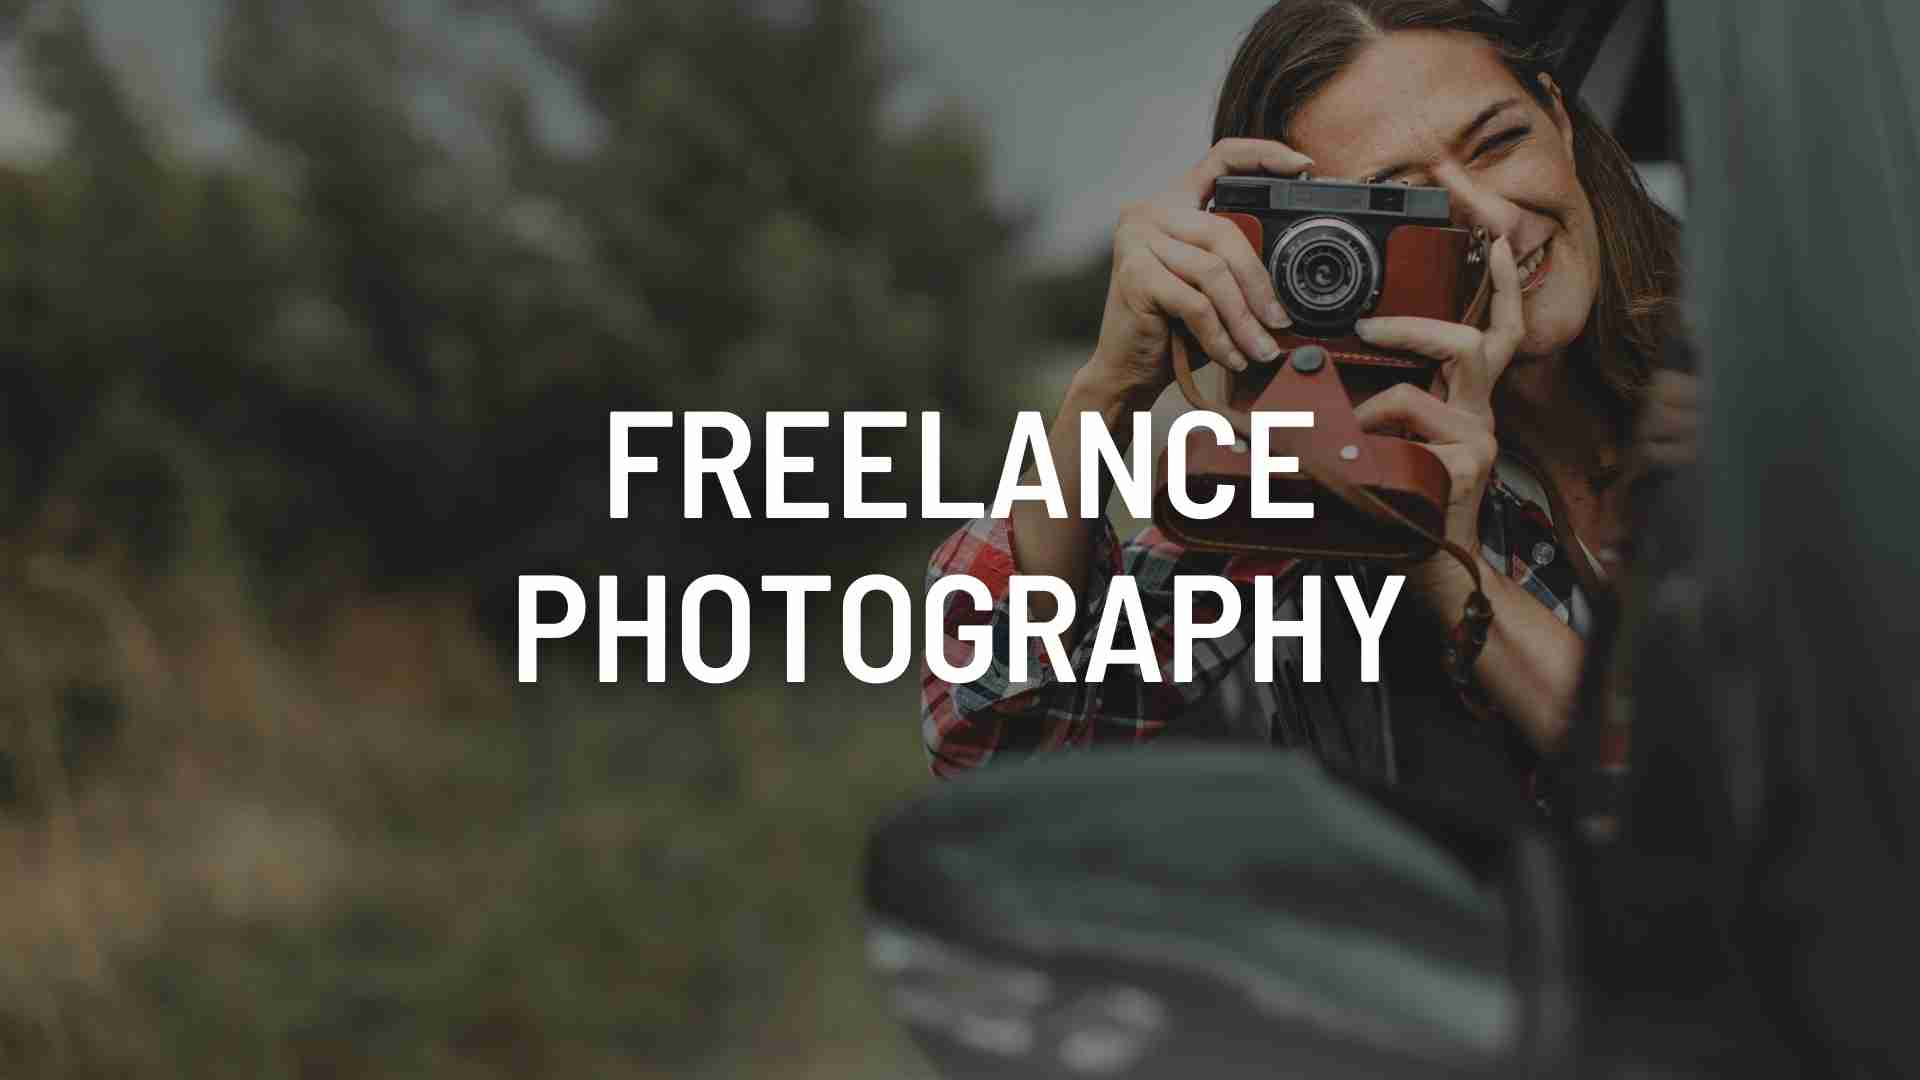 Freelance Photography: